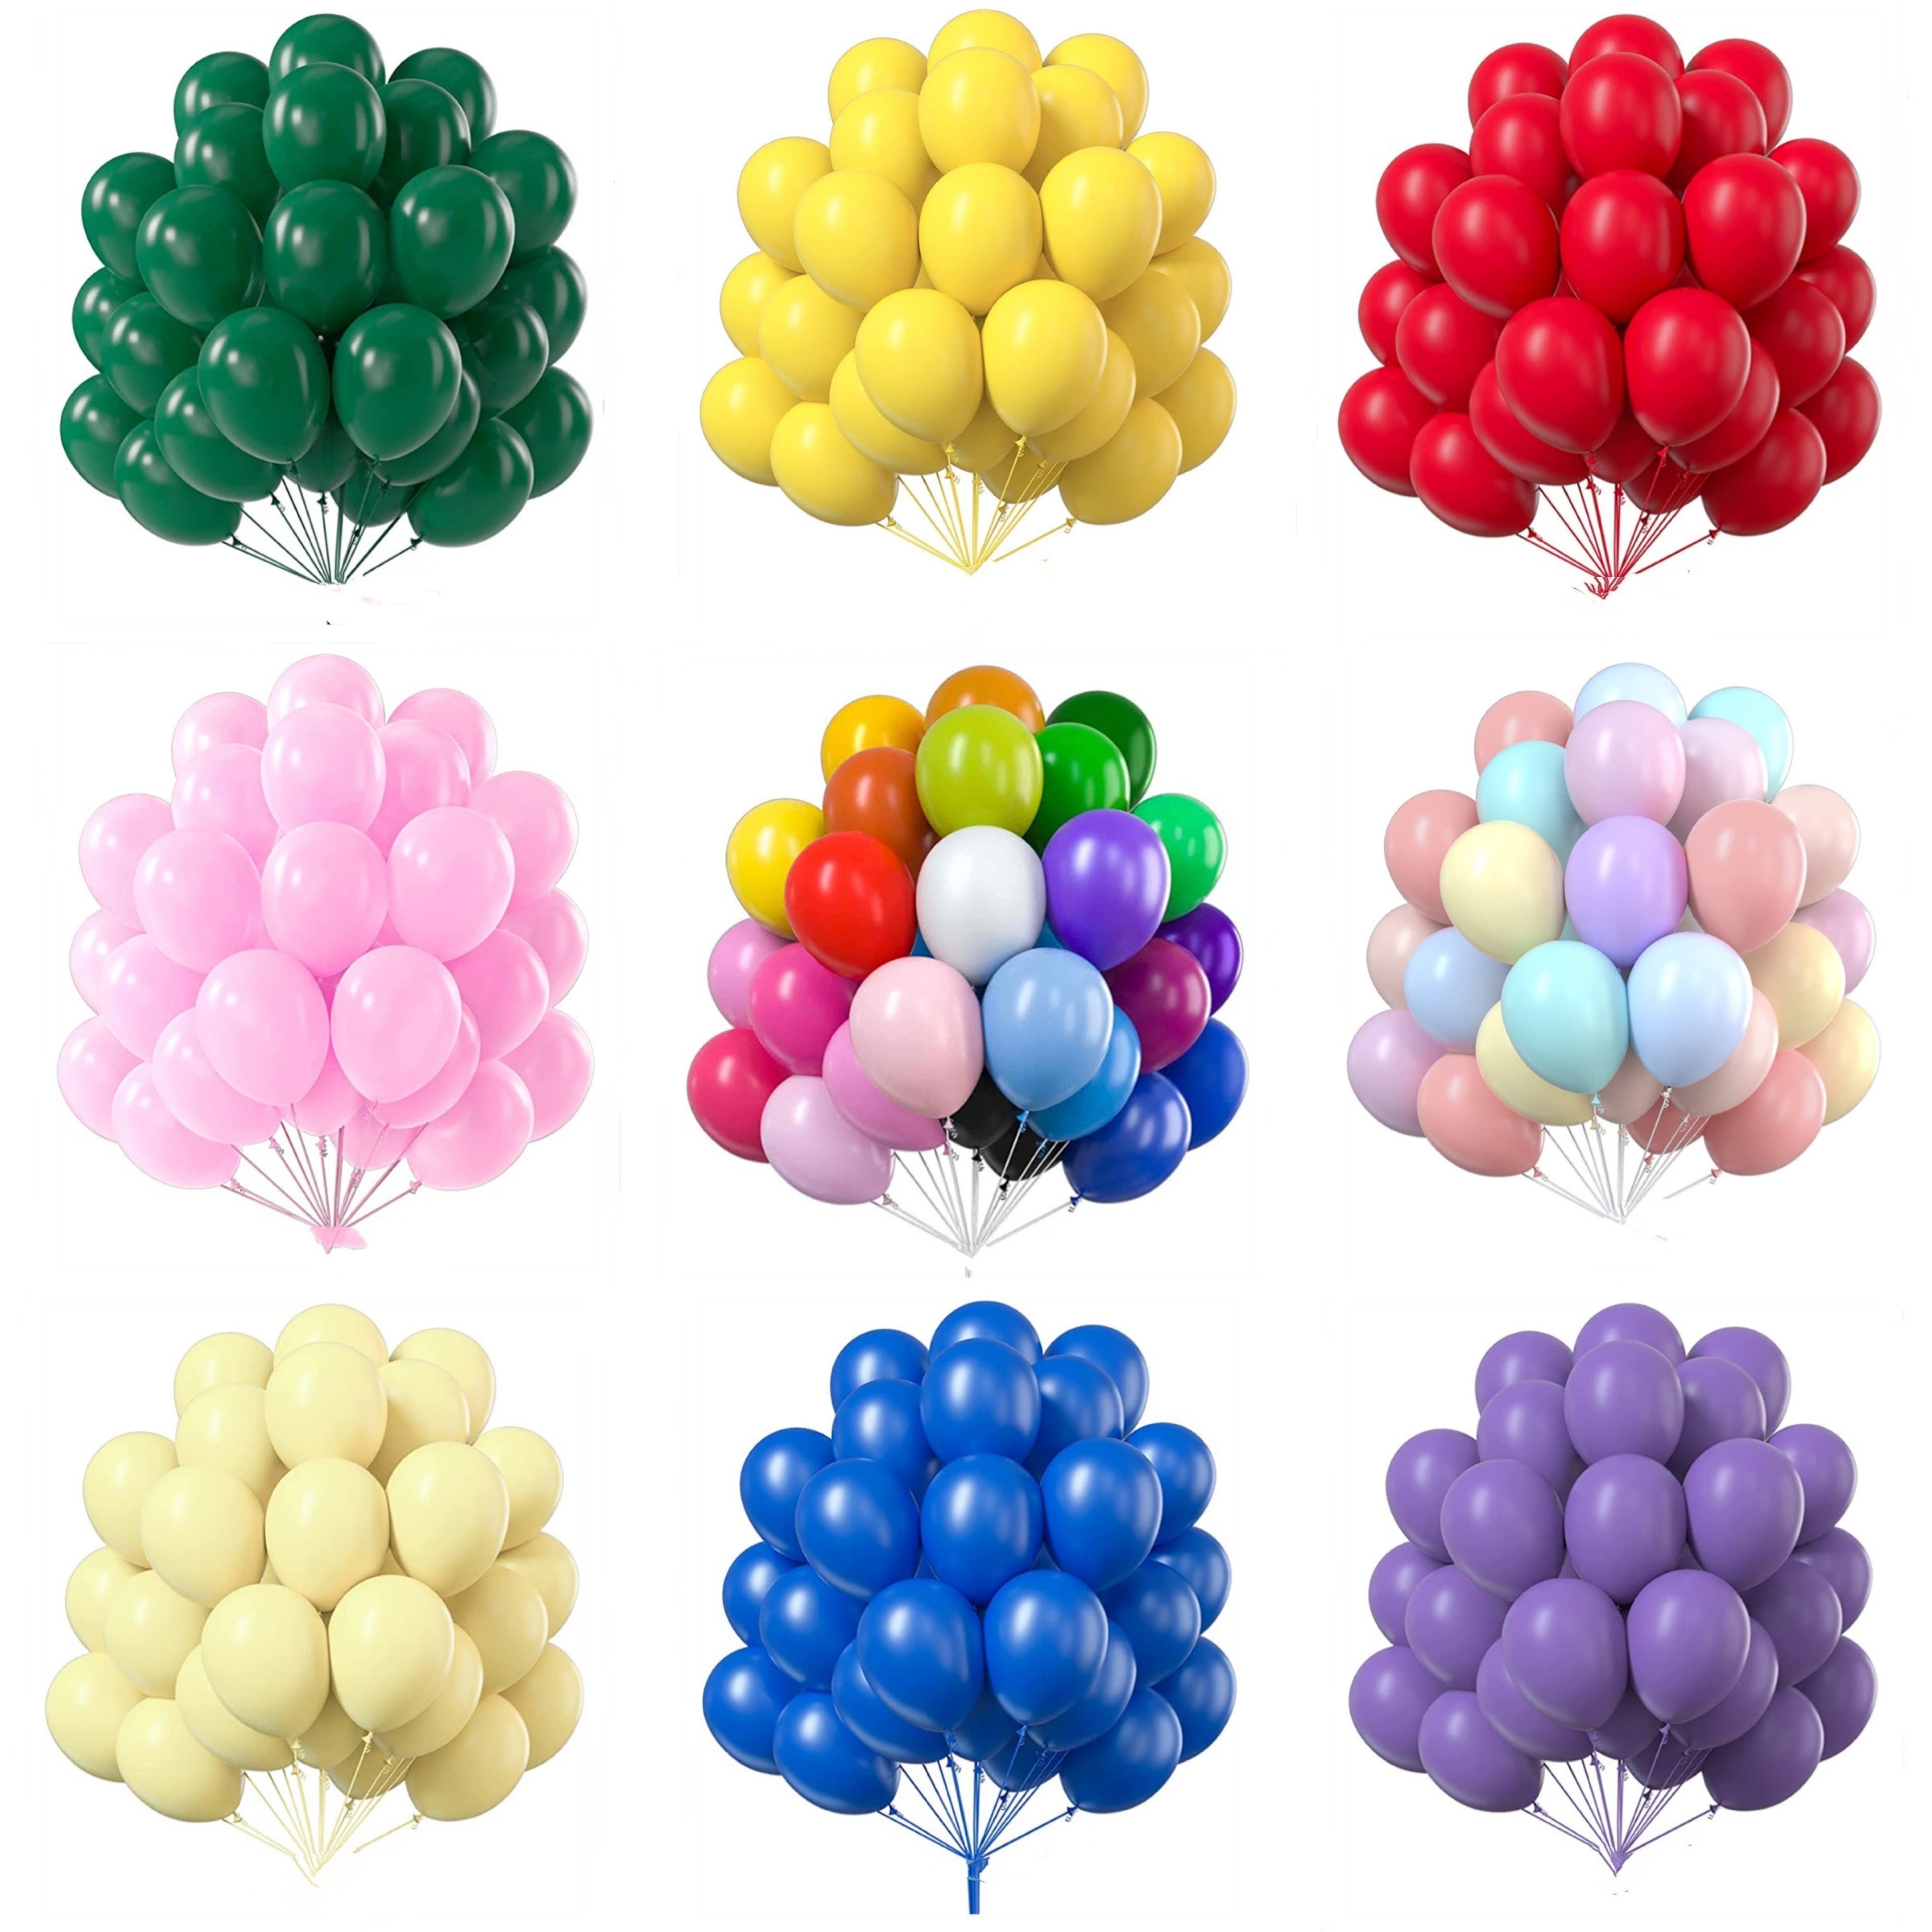 100 globos negros pequeños de 5 pulgadas, de látex cromado metálico, helio,  brillante, mini globo para decoración de fiestas